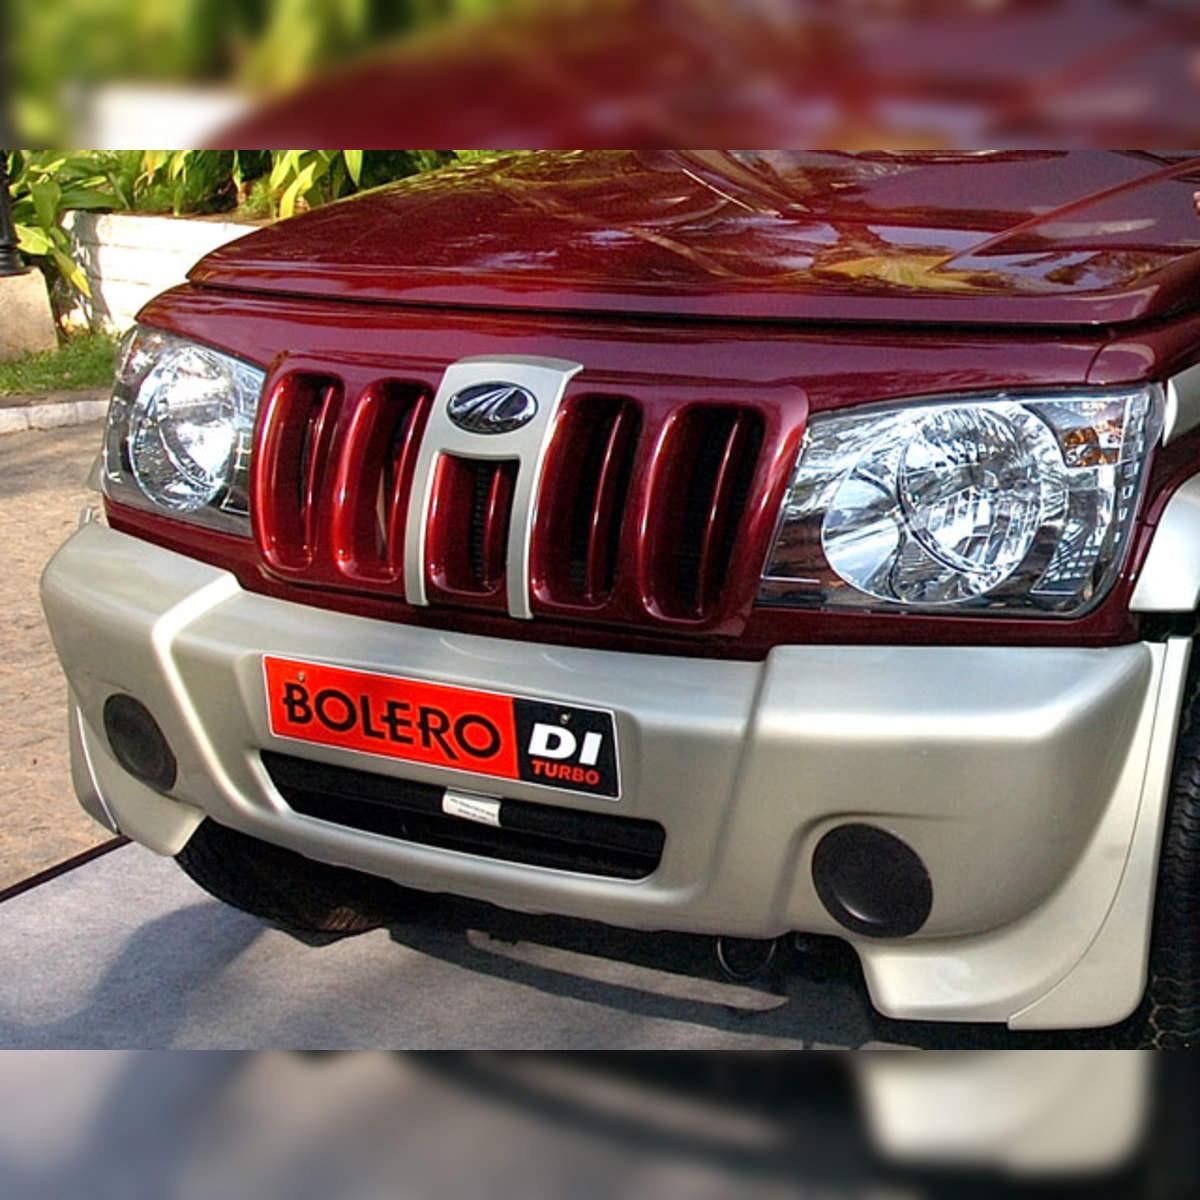 Mahindra sells over 1 lakh Bolero SUVs in FY 2023, Auto News, ET Auto